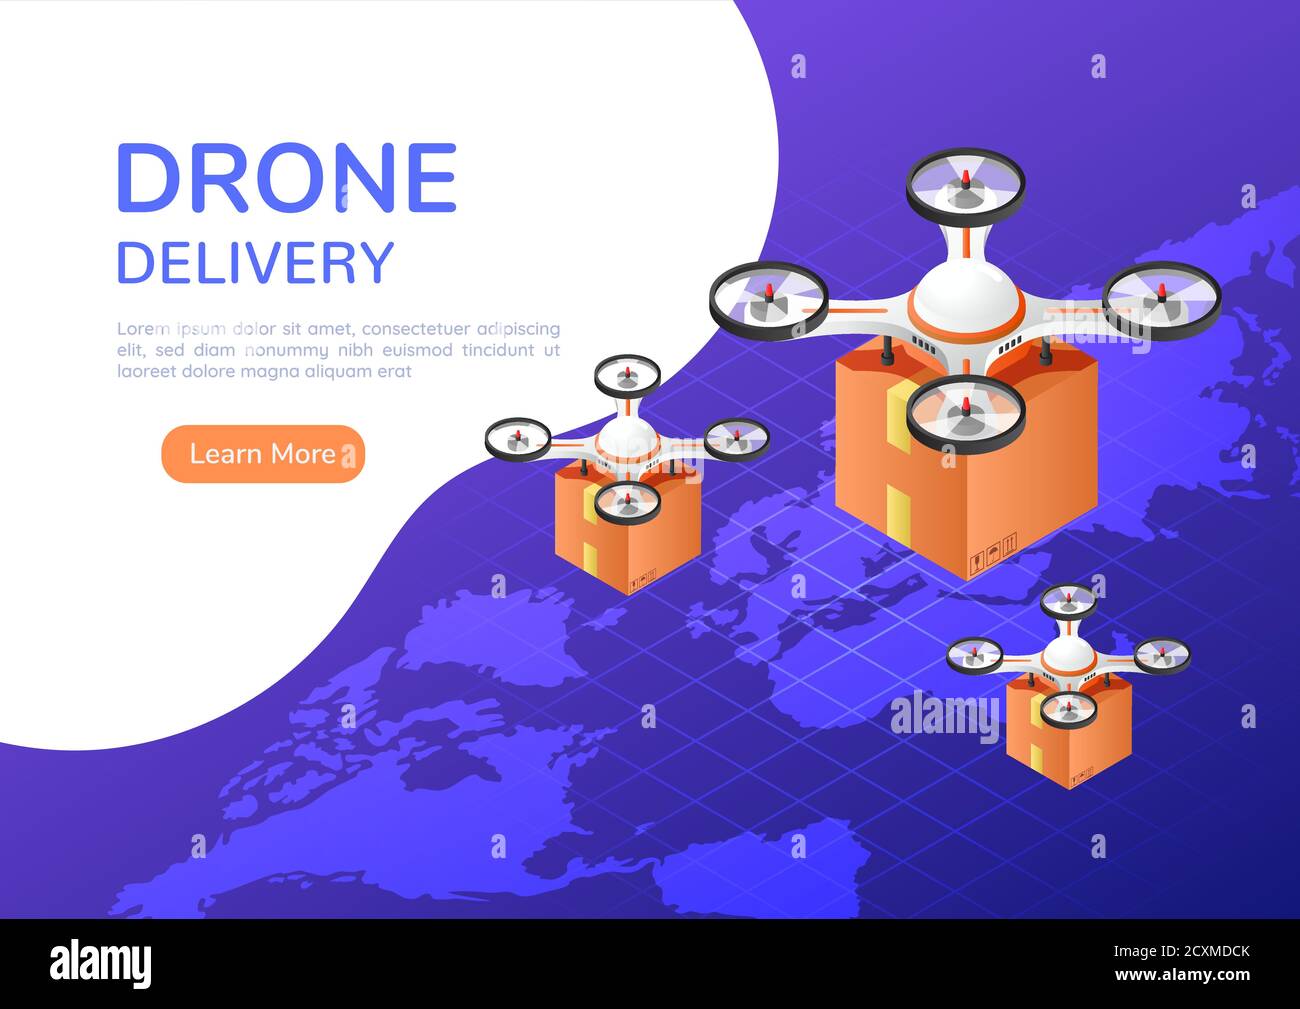 quadricottero o drone con banner web isometrico 3d che sorvola la mappa del mondo e trasporta un pacchetto alla consegna. Concetto innovativo di consegna e spedizione dei droni. Illustrazione Vettoriale